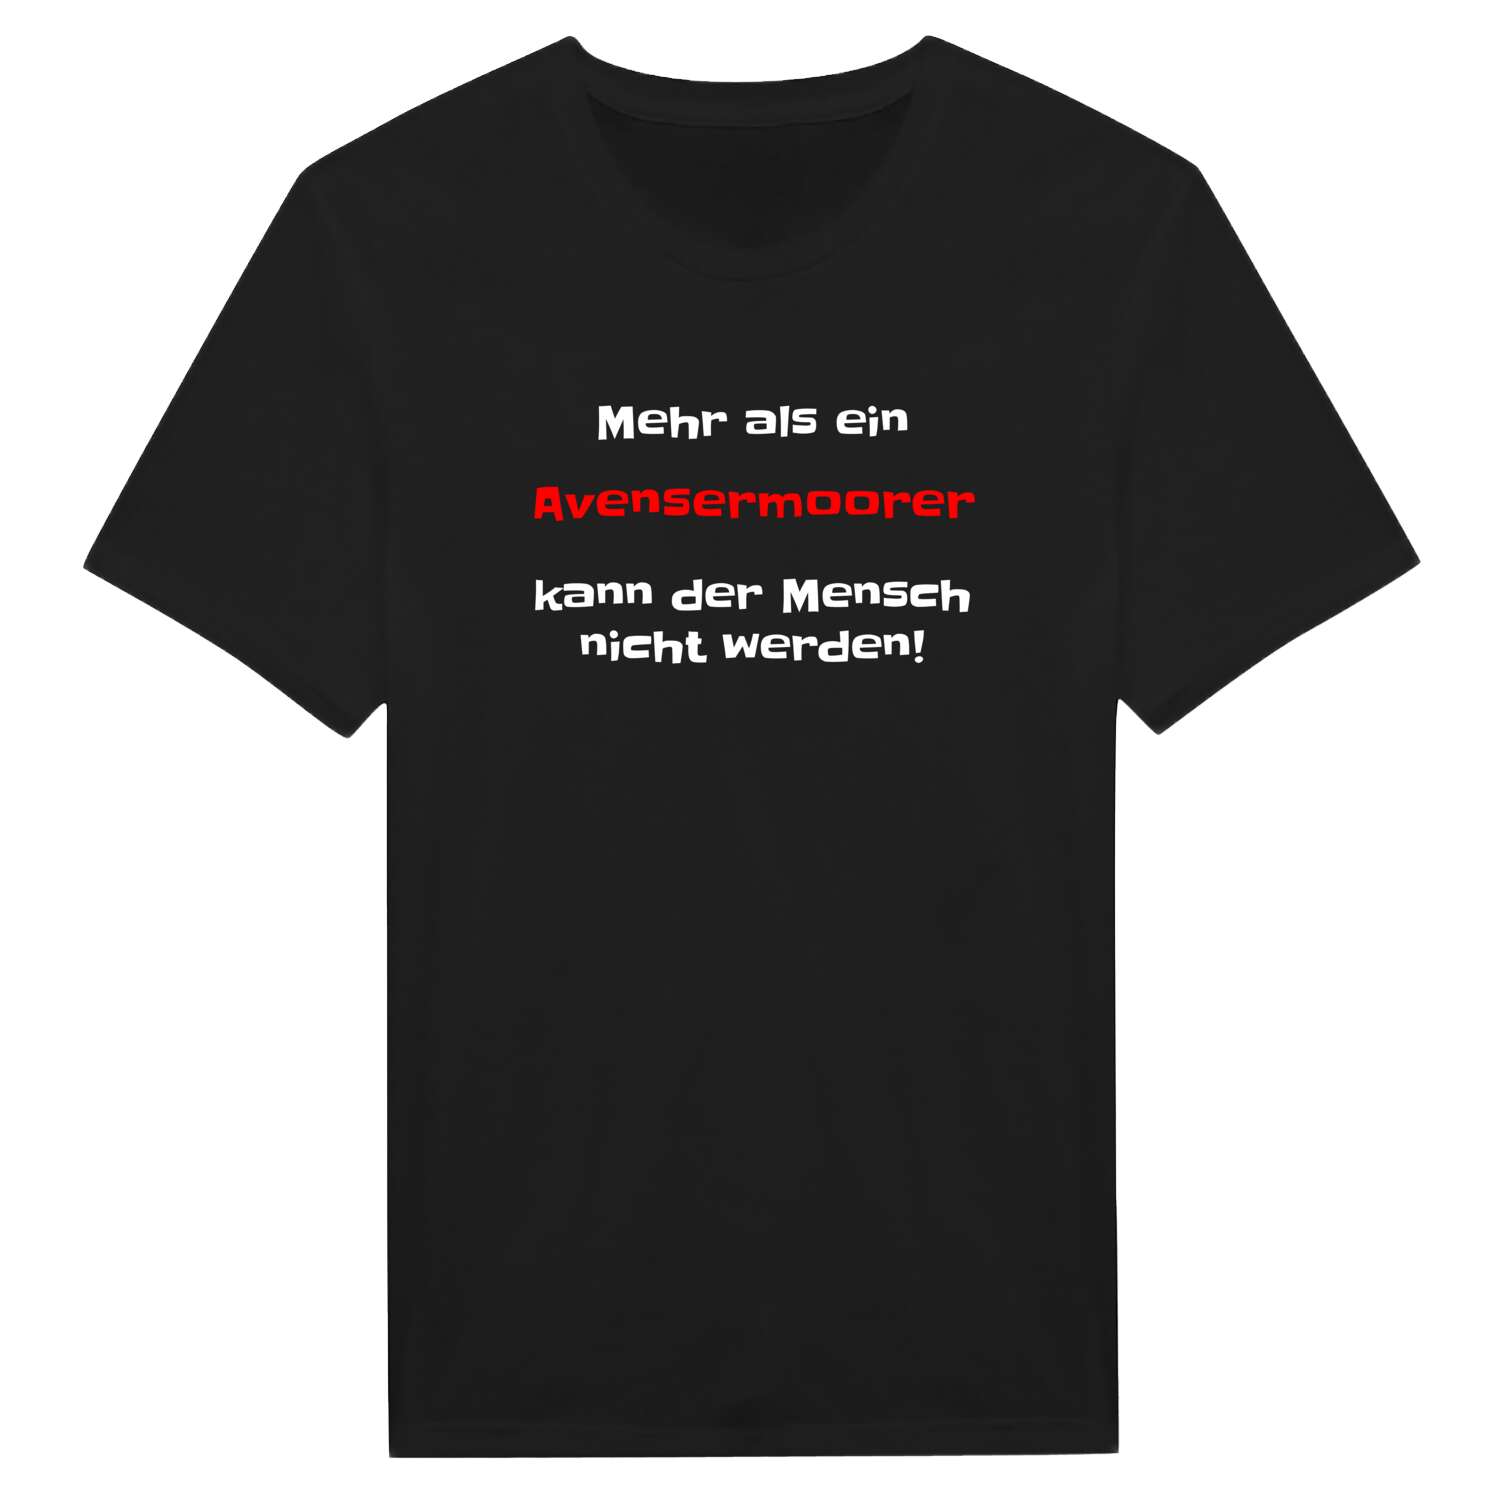 Avensermoor T-Shirt »Mehr als ein«